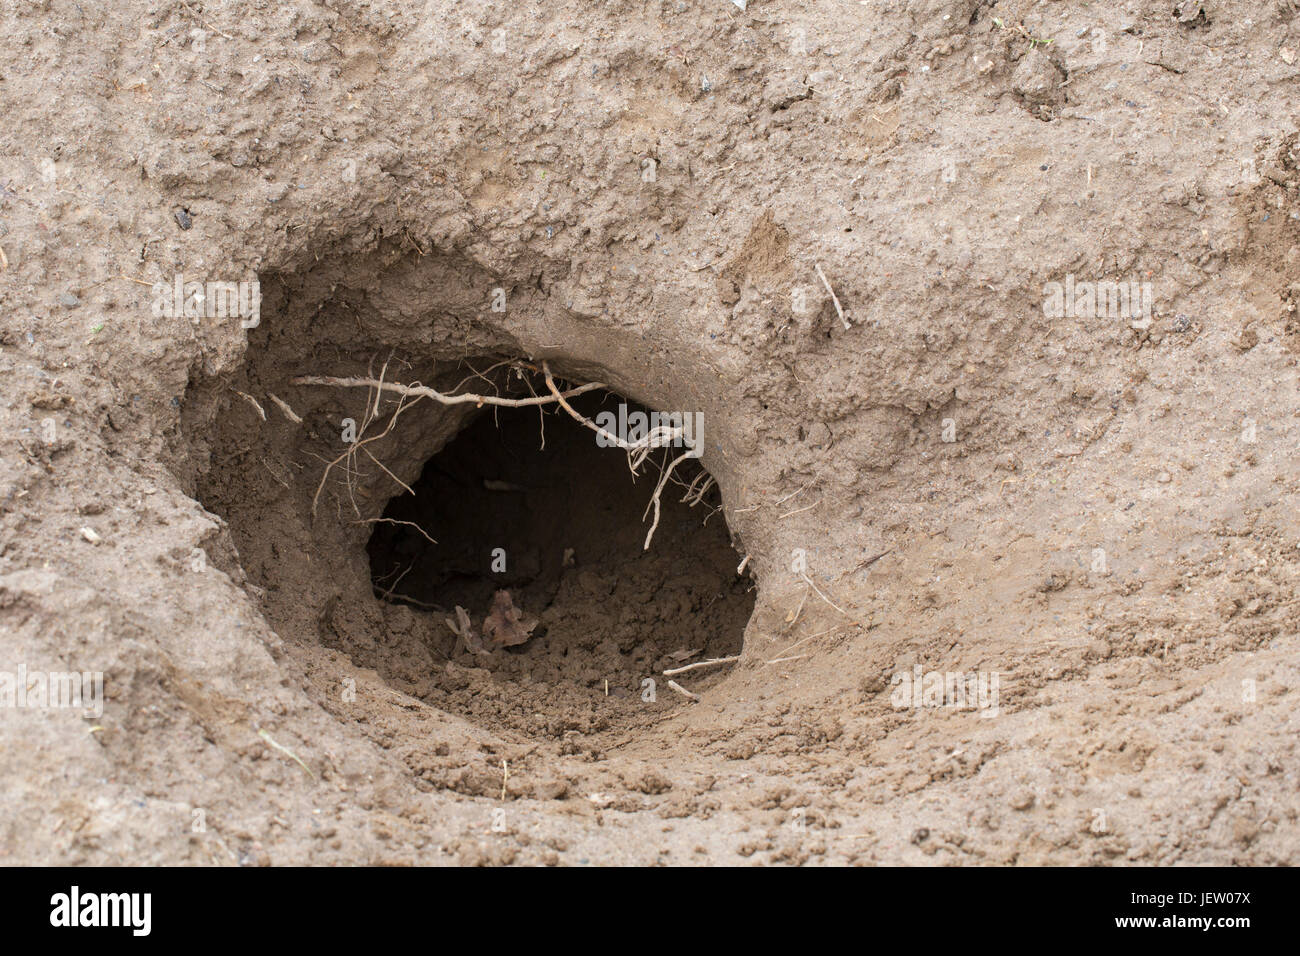 Entrada de unión Tejón (Meles meles) den / sett badger badger / conjunto excavado en el suelo Foto de stock